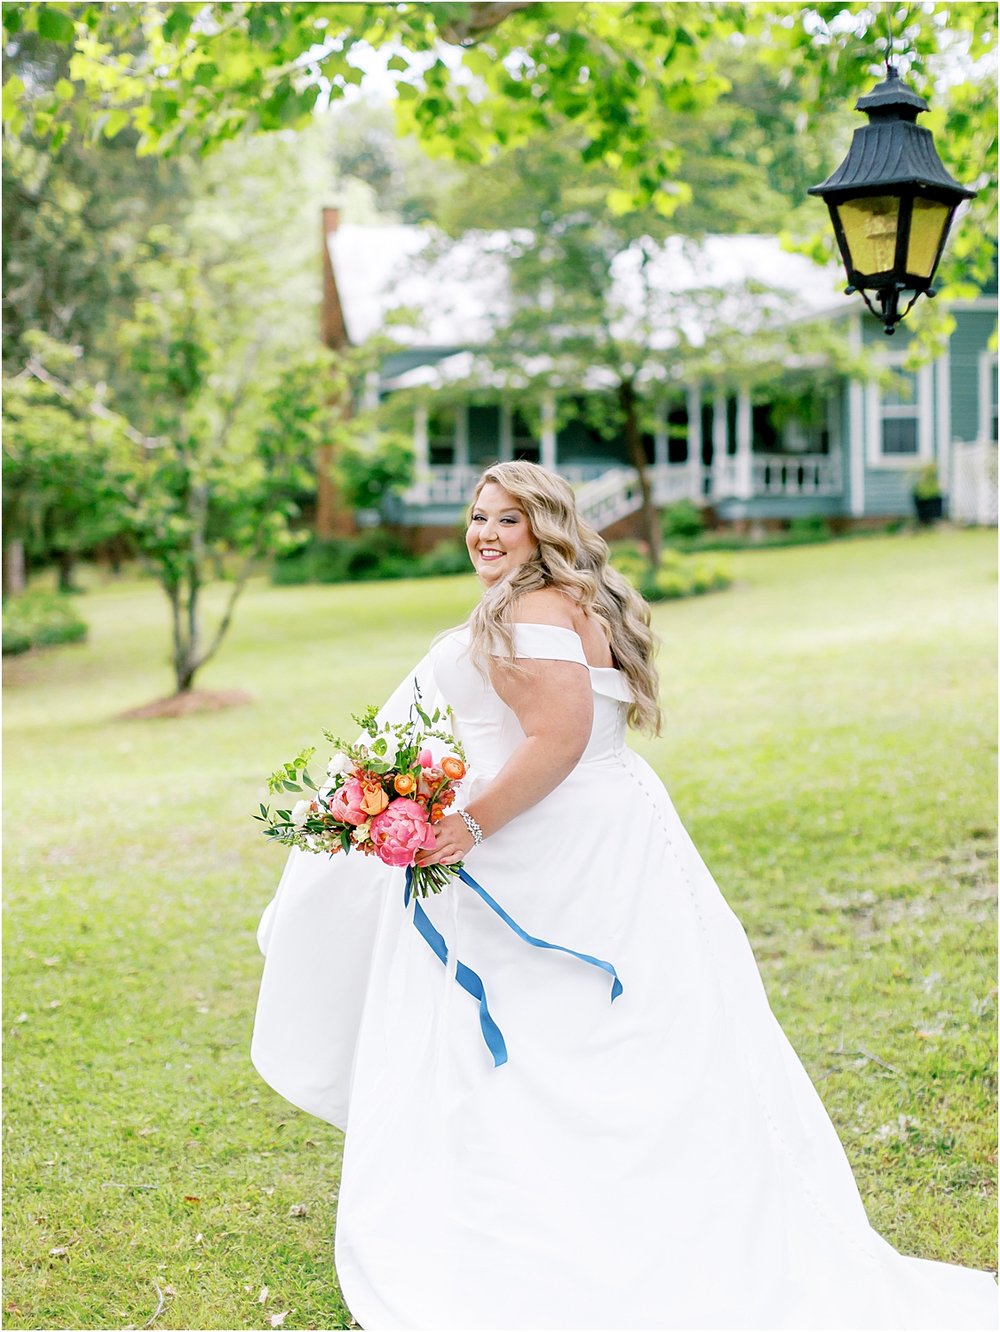 Southern yet classic beautiful bridal dress